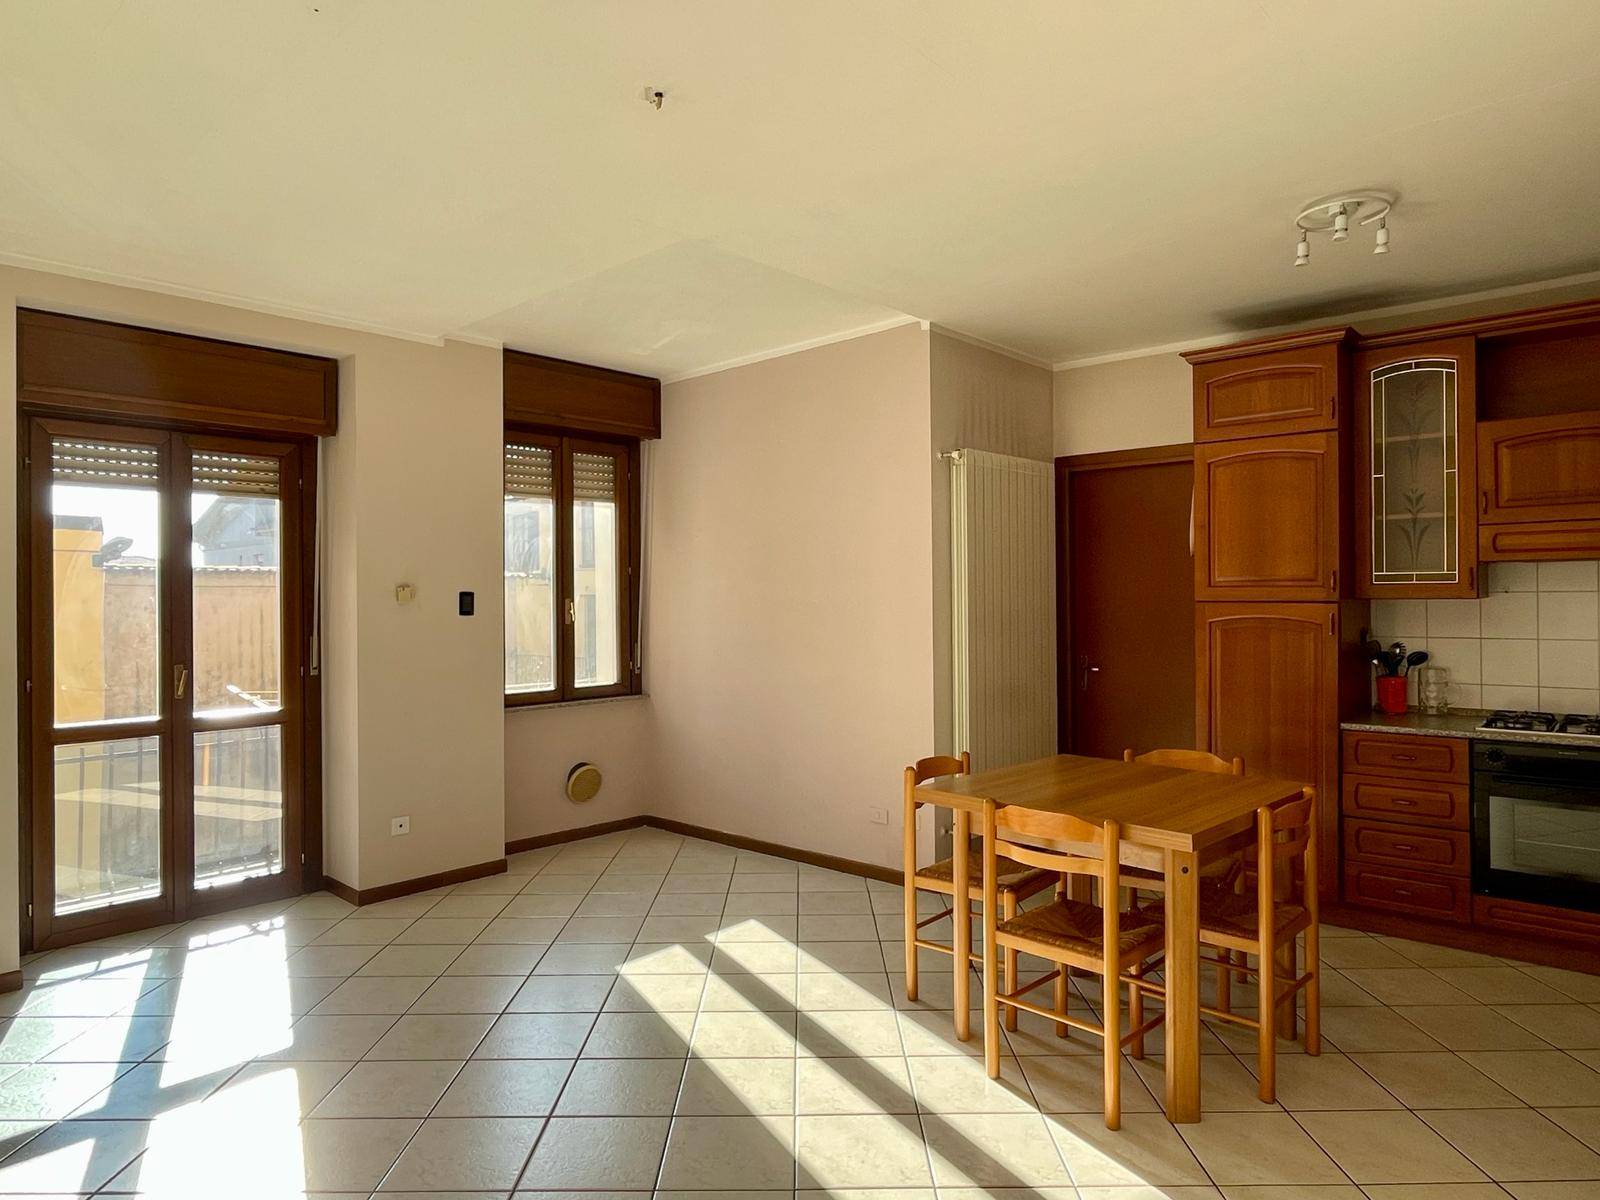 Appartamento in vendita a Alzano Lombardo, 2 locali, prezzo € 95.000 | PortaleAgenzieImmobiliari.it